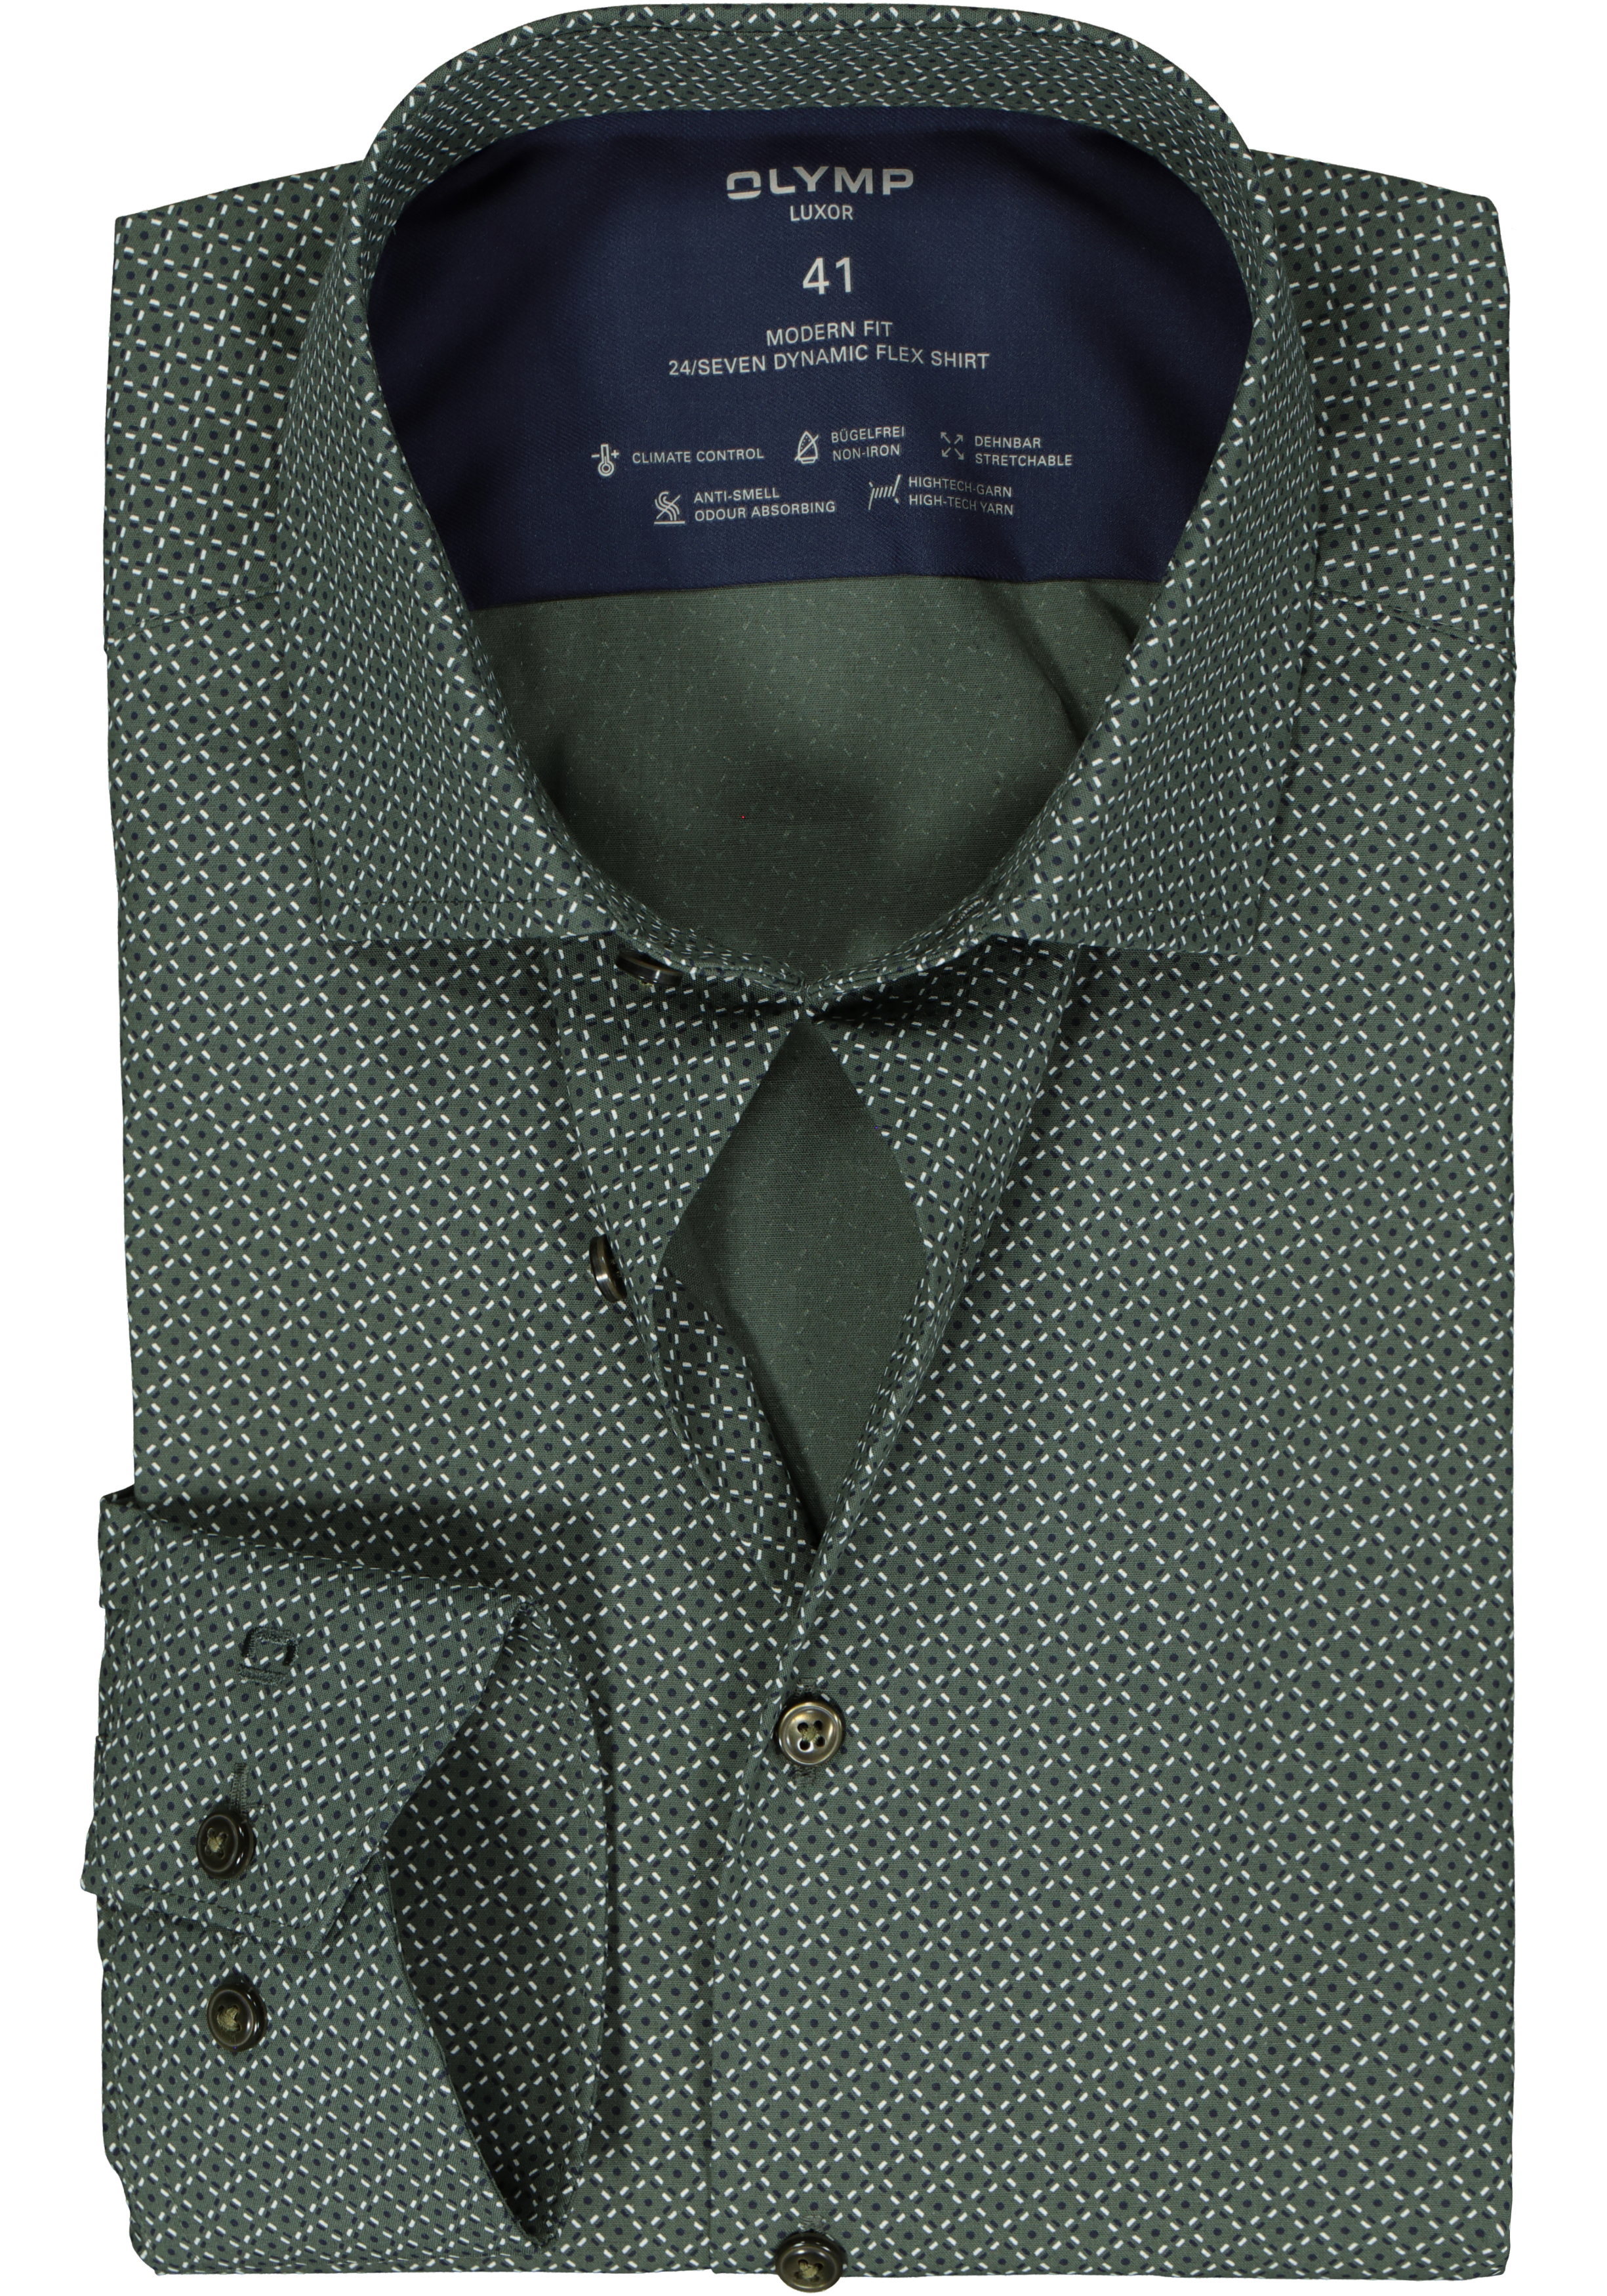 OLYMP 24/7 modern fit overhemd, popeline, olijfgroen met blauw en wit dessin